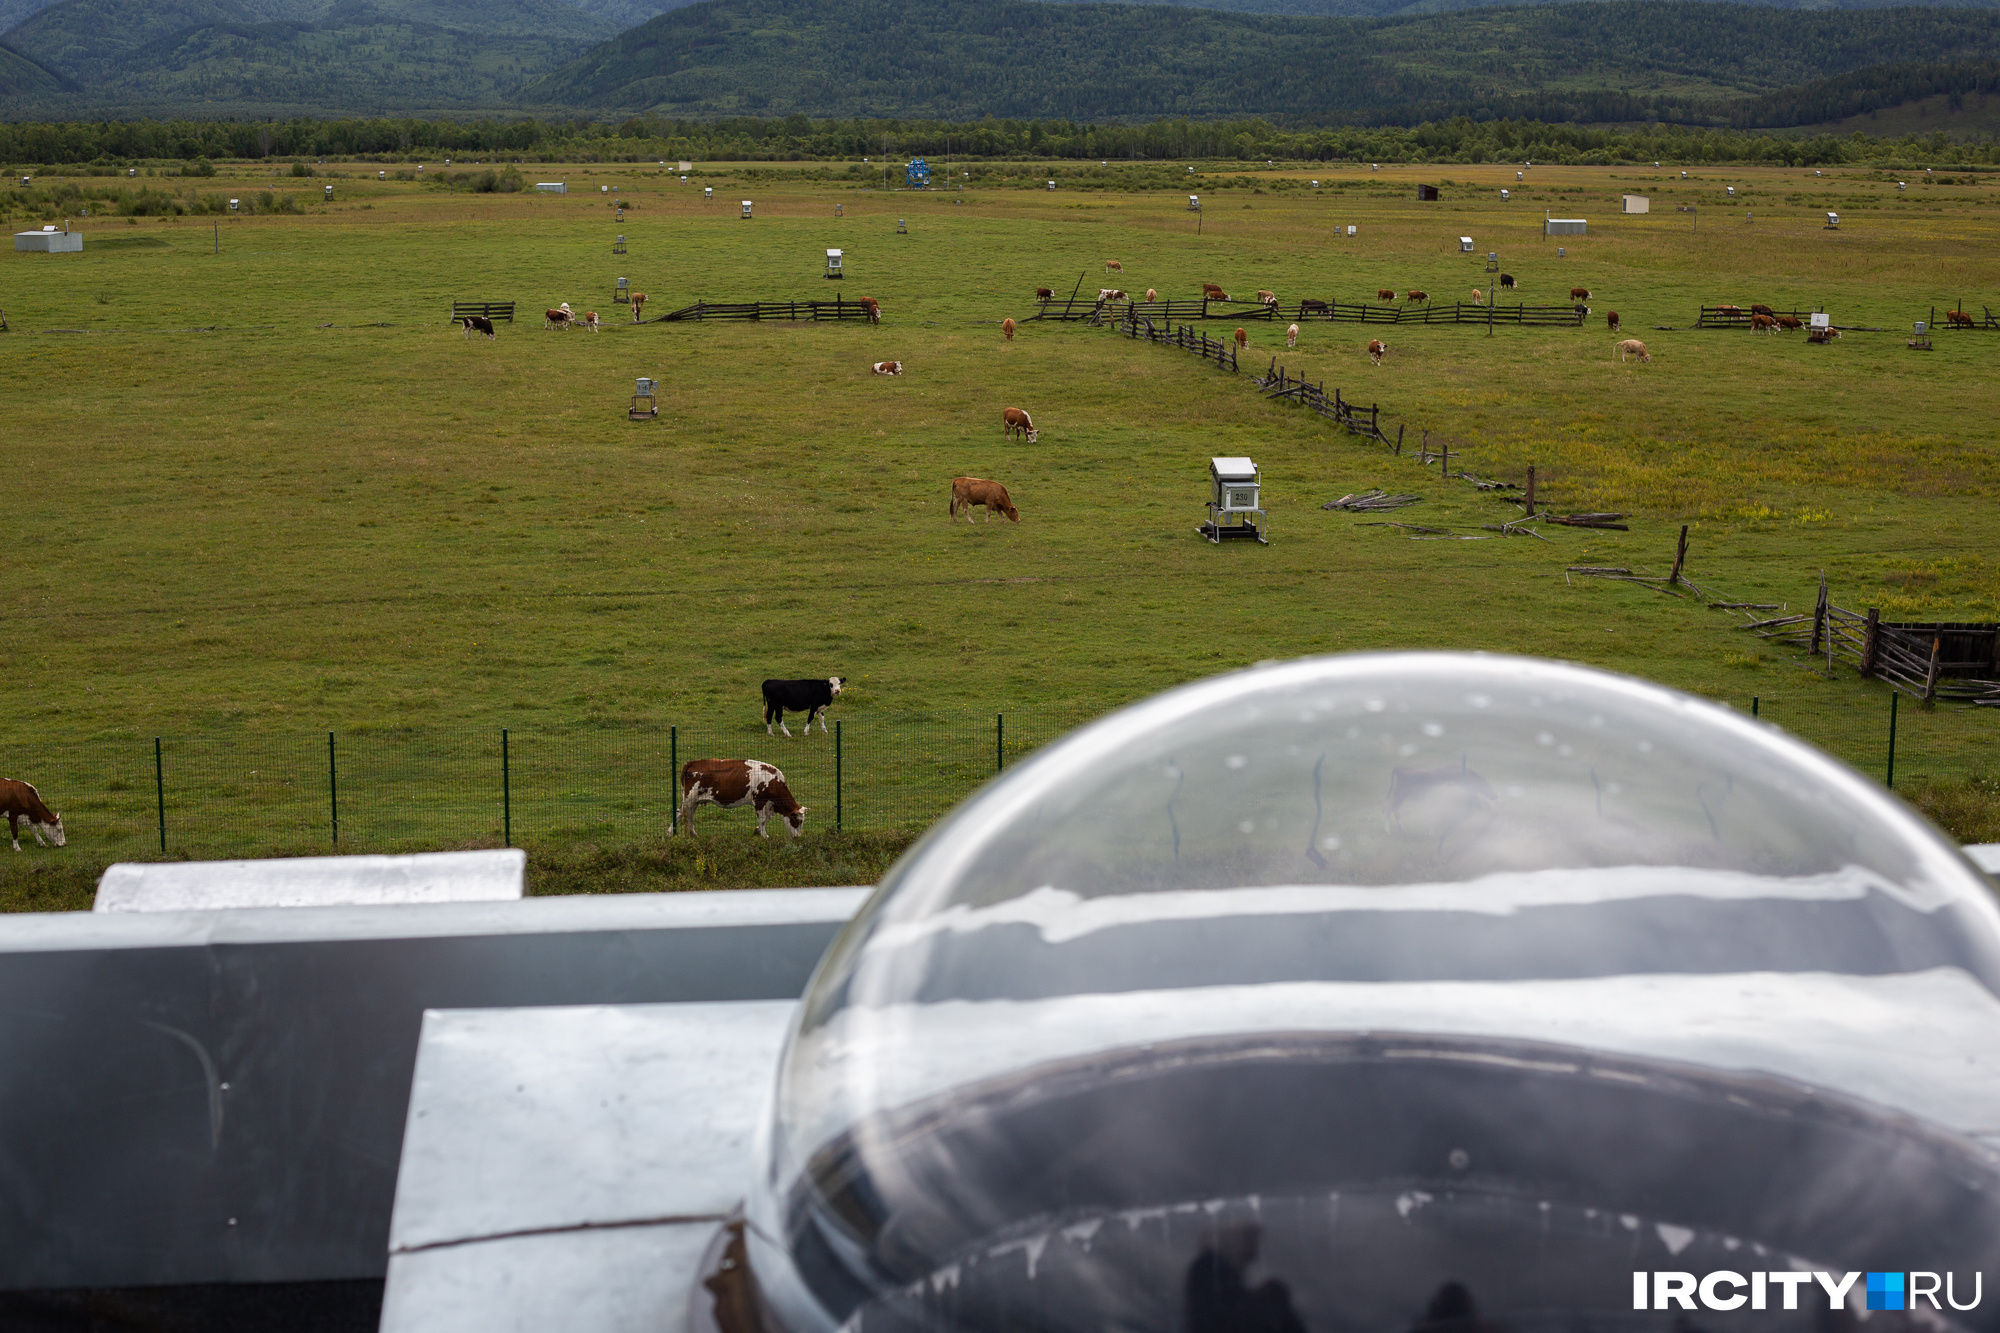 Коров не беспокоят никакие научные исследования: у них свои важные дела на этой территории